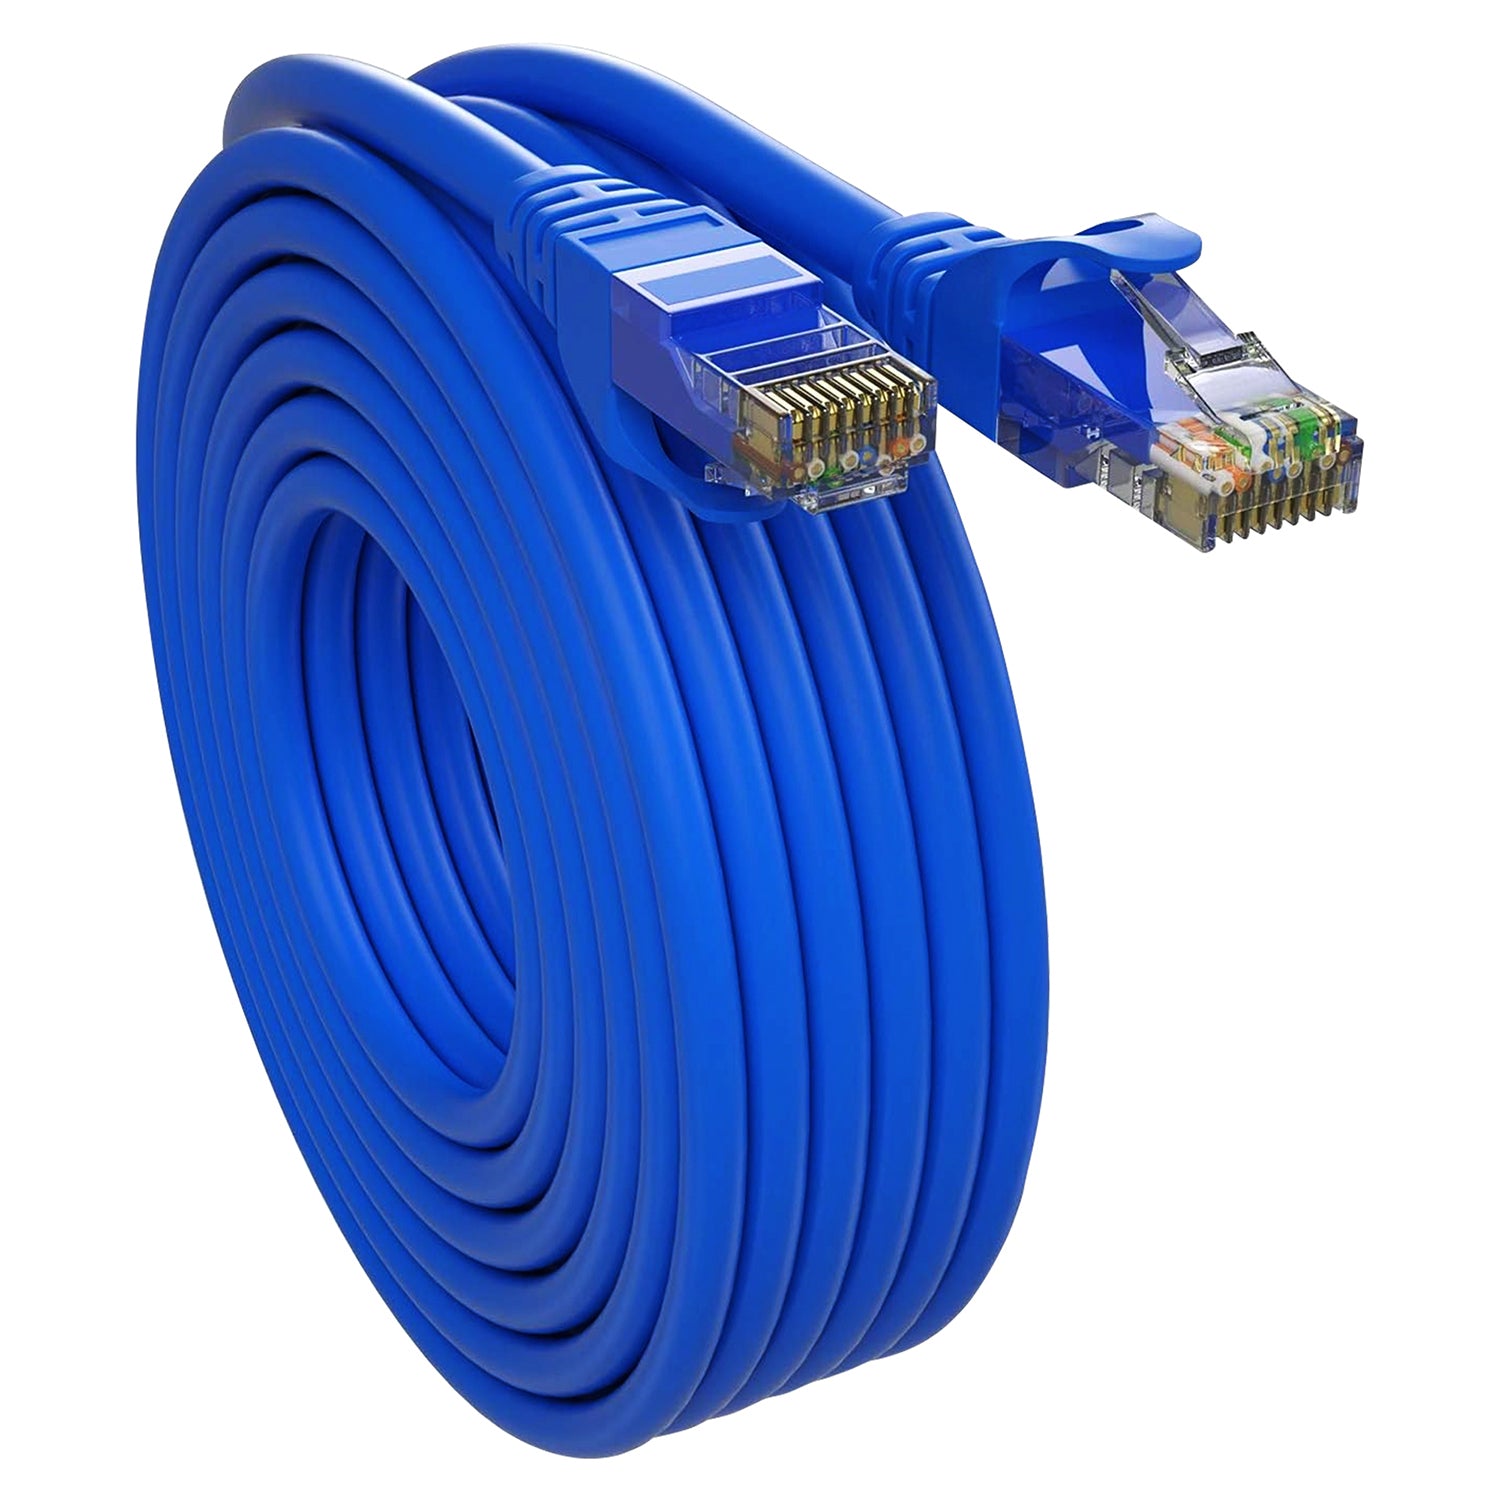 5 Core Ethernet Cable 20 Feet 1 Piece Blue Cat 6 Cord Premium RJ45 Internet Cable Cat6 Compatible w Cat 5 Cat 7 Cat 5e Network Cable - ET 20FT BLU